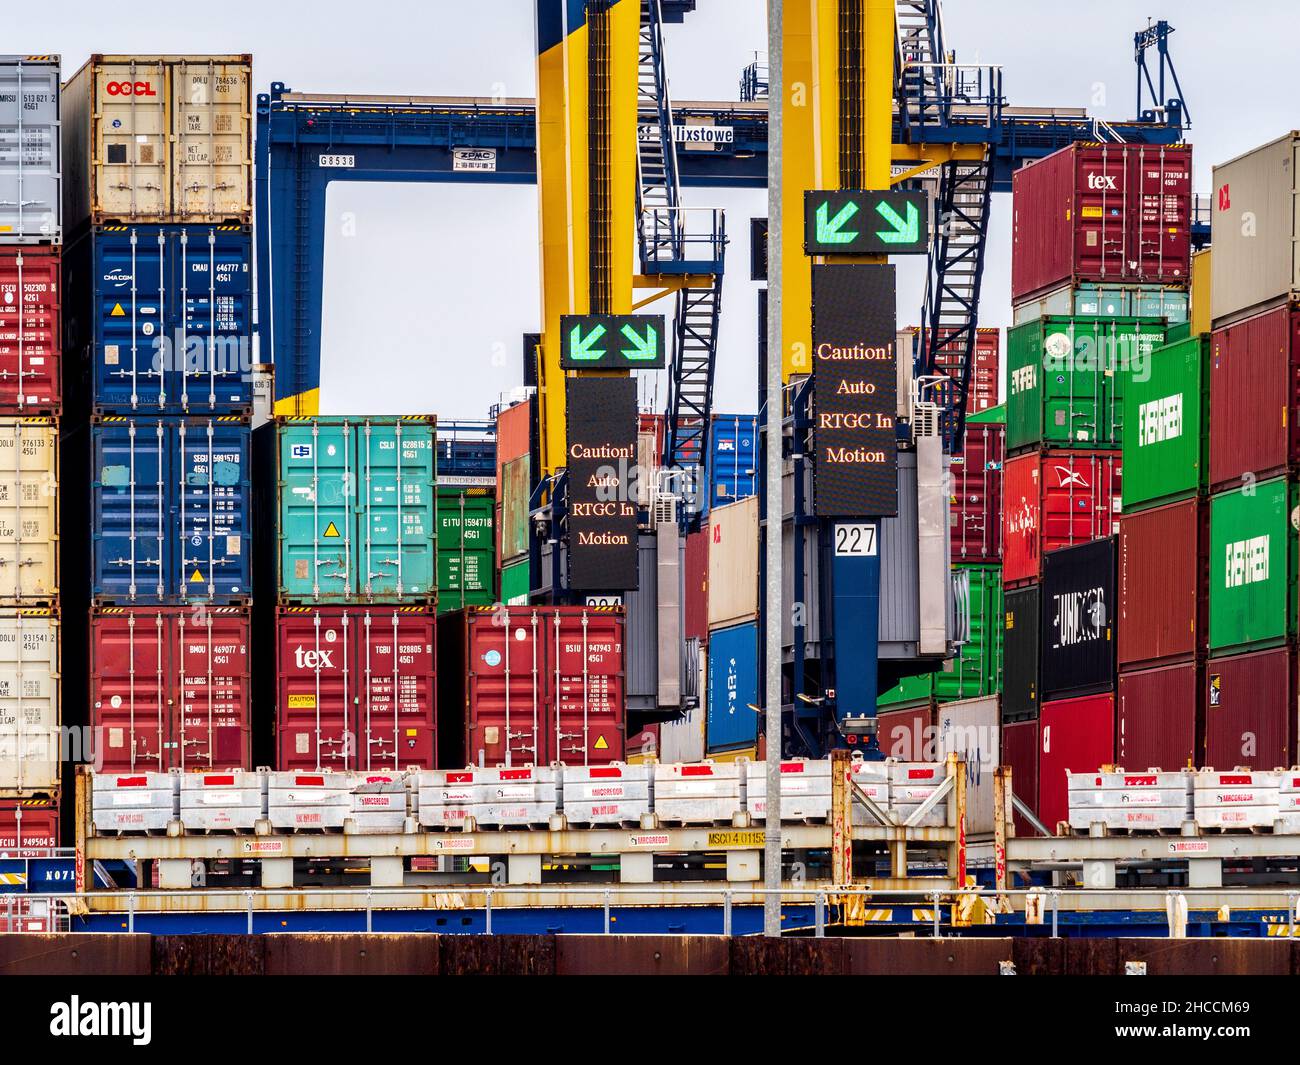 Containerüberlastung in britischen Häfen - gestapelte Transportcontainer warten auf die Abholung oder Weiterbeförderung im Hafen Felixstowe. Stockfoto